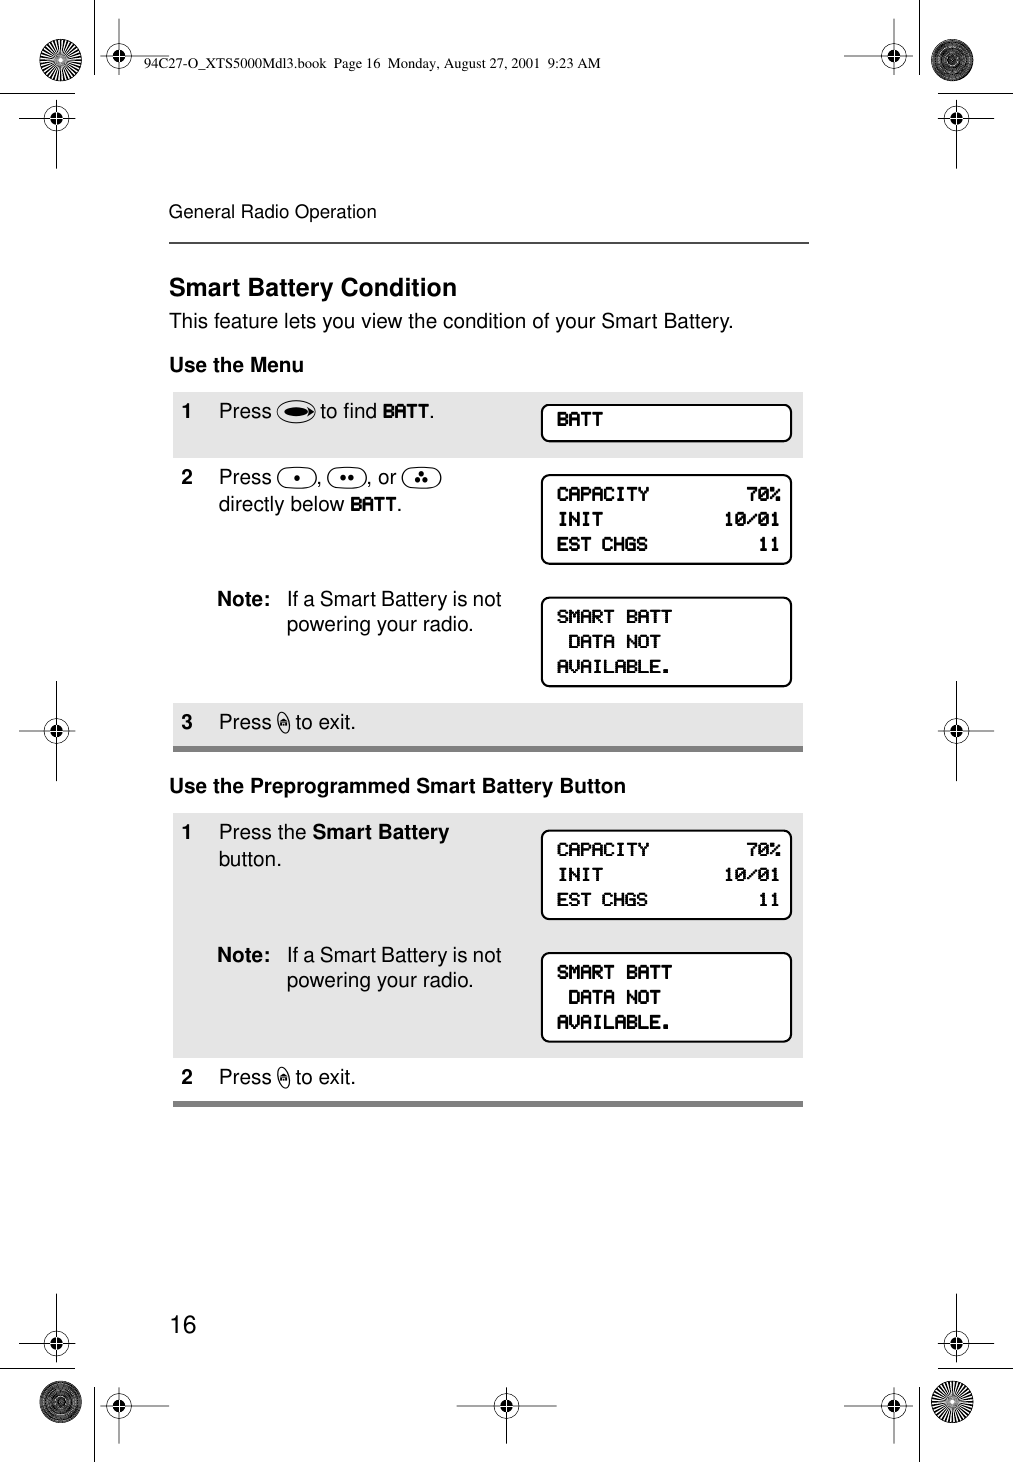 16General Radio OperationSmart Battery ConditionThis feature lets you view the condition of your Smart Battery.Use the MenuUse the Preprogrammed Smart Battery Button1Press U to ﬁnd BBBBAAAATTTTTTTT.2Press D, E, or F directly below BBBBAAAATTTTTTTT.Note: If a Smart Battery is not powering your radio.3Press h to exit.1Press the Smart Battery button.Note: If a Smart Battery is not powering your radio.2Press h to exit.BBBBAAAATTTTTTTTCCCCAAAAPPPPAAAACCCCIIIITTTTYYYY                                    77770000%%%%IIIINNNNIIIITTTT                                            11110000////00001111EEEESSSSTTTT    CCCCHHHHGGGGSSSS                                            11111111SSSSMMMMAAAARRRRTTTT    BBBBAAAATTTTTTTT    DDDDAAAATTTTAAAA    NNNNOOOOTTTTAAAAVVVVAAAAIIIILLLLAAAABBBBLLLLEEEE....CCCCAAAAPPPPAAAACCCCIIIITTTTYYYY                                    77770000%%%%IIIINNNNIIIITTTT                                            11110000////00001111EEEESSSSTTTT    CCCCHHHHGGGGSSSS                                            11111111SSSSMMMMAAAARRRRTTTT    BBBBAAAATTTTTTTT    DDDDAAAATTTTAAAA    NNNNOOOOTTTTAAAAVVVVAAAAIIIILLLLAAAABBBBLLLLEEEE....94C27-O_XTS5000Mdl3.book  Page 16  Monday, August 27, 2001  9:23 AM